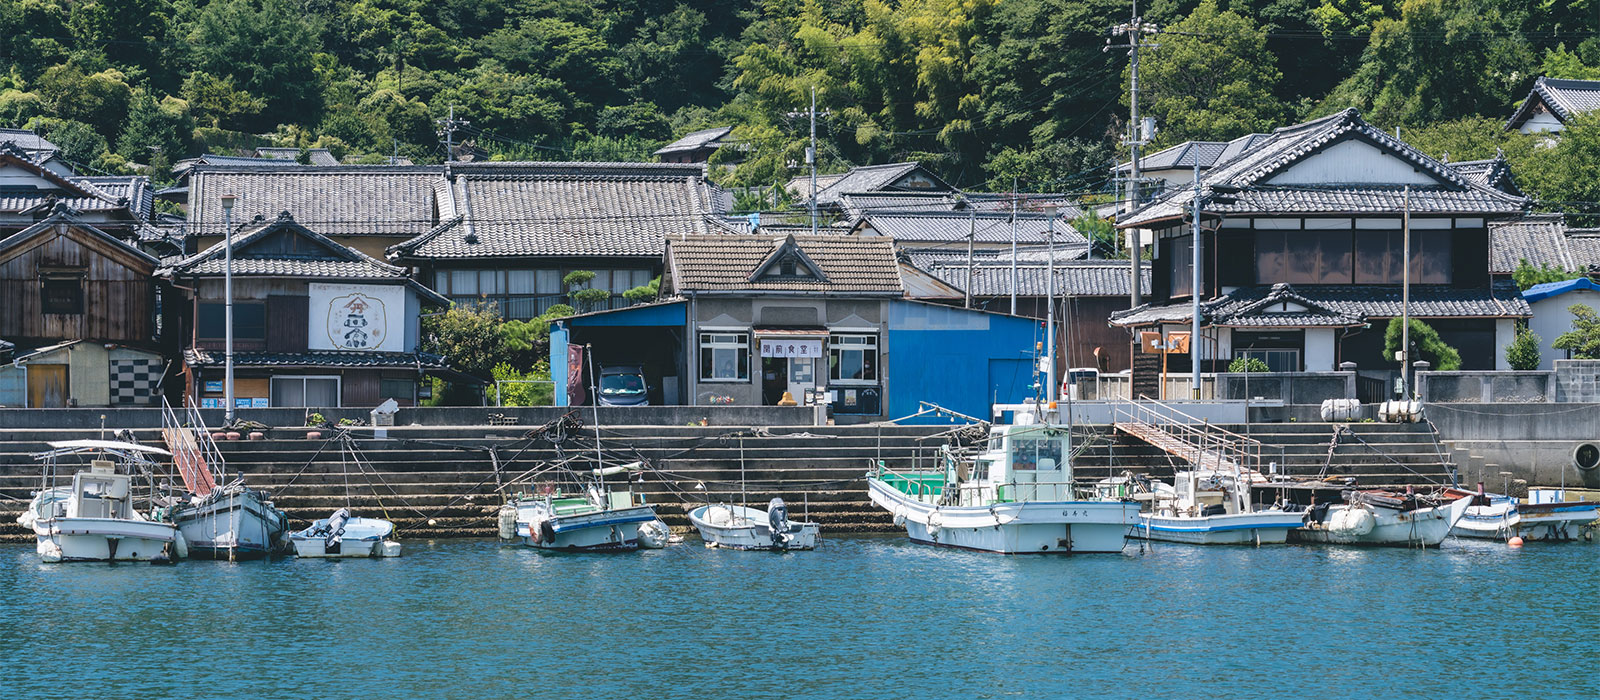 とびしま海道の終端。潮待ち港の風情を残す岡村島。その2